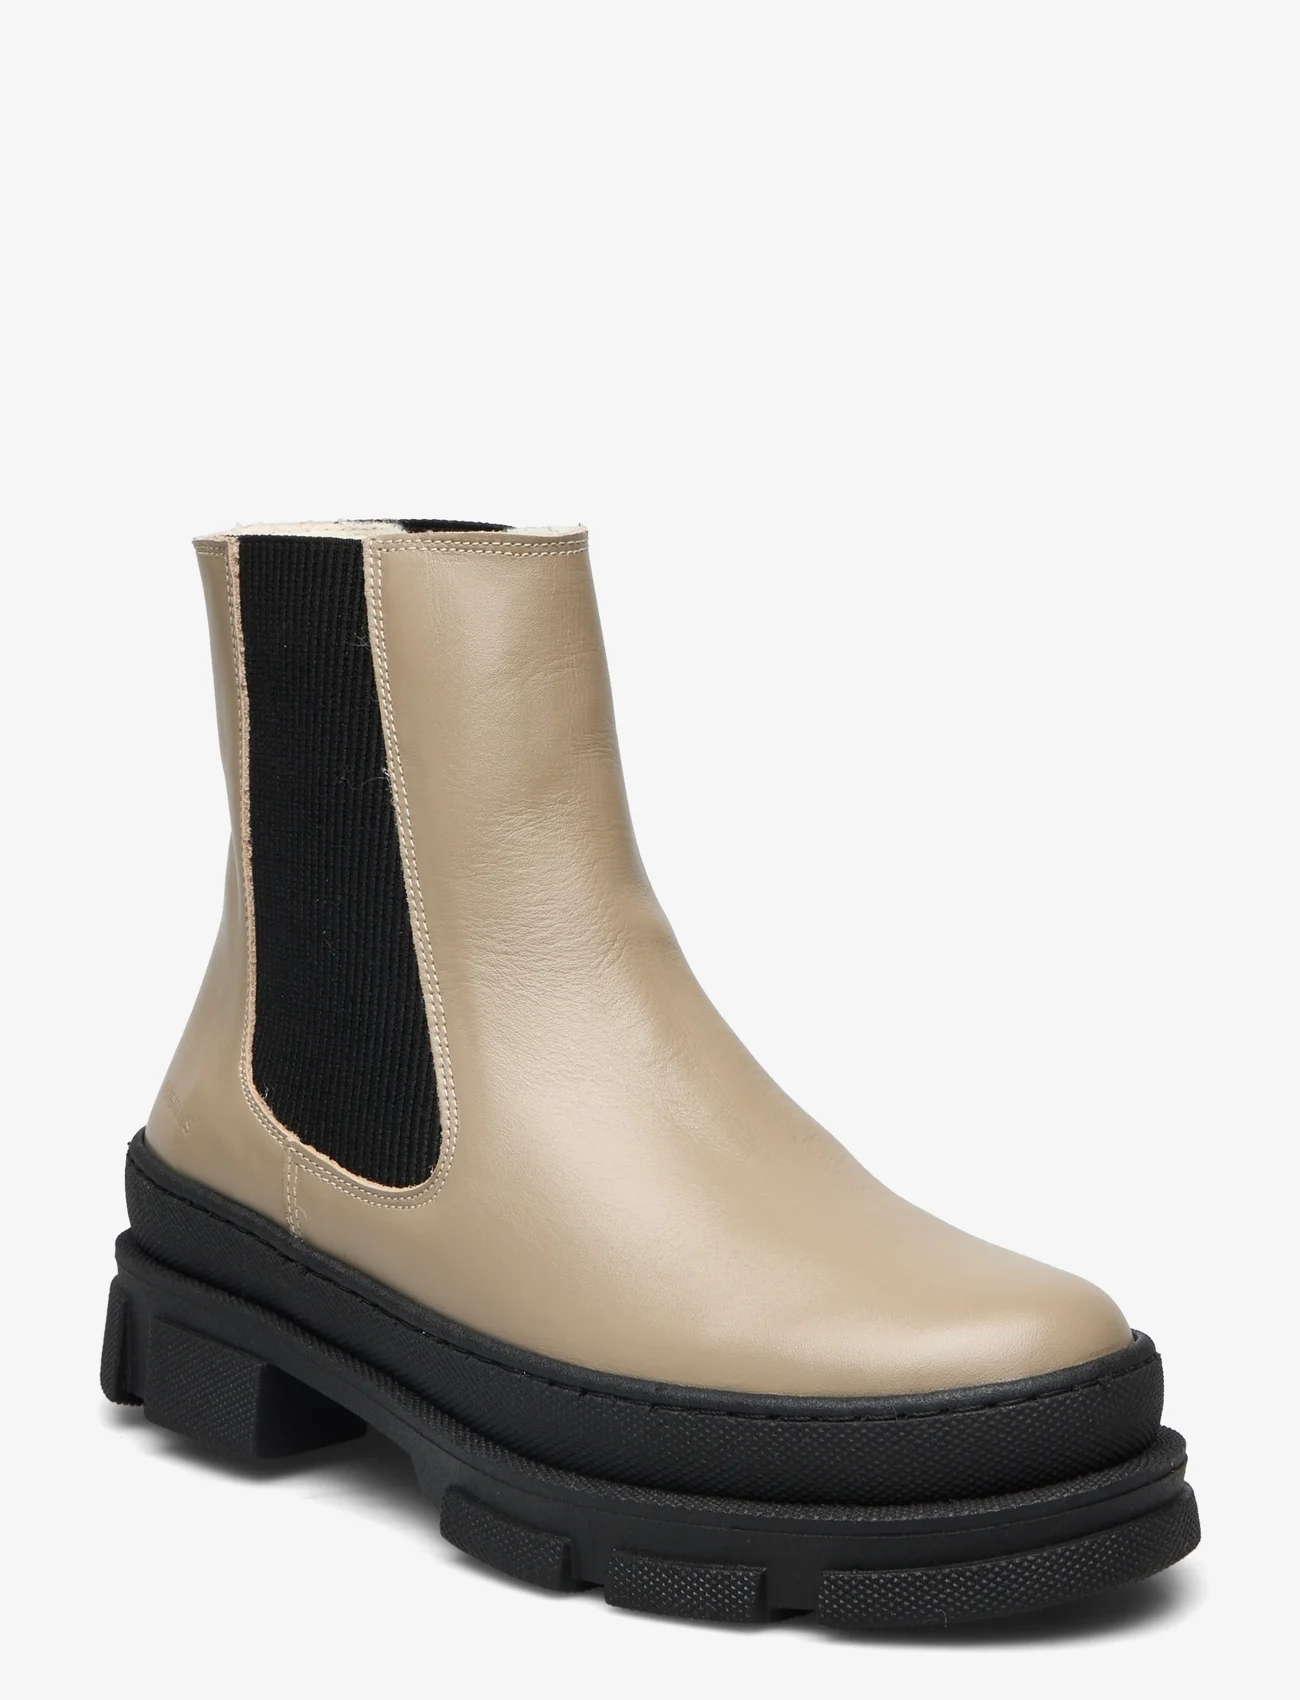 ANGULUS - Boots - flat - chelsea-saapad - 1571/019 beige/black - 0